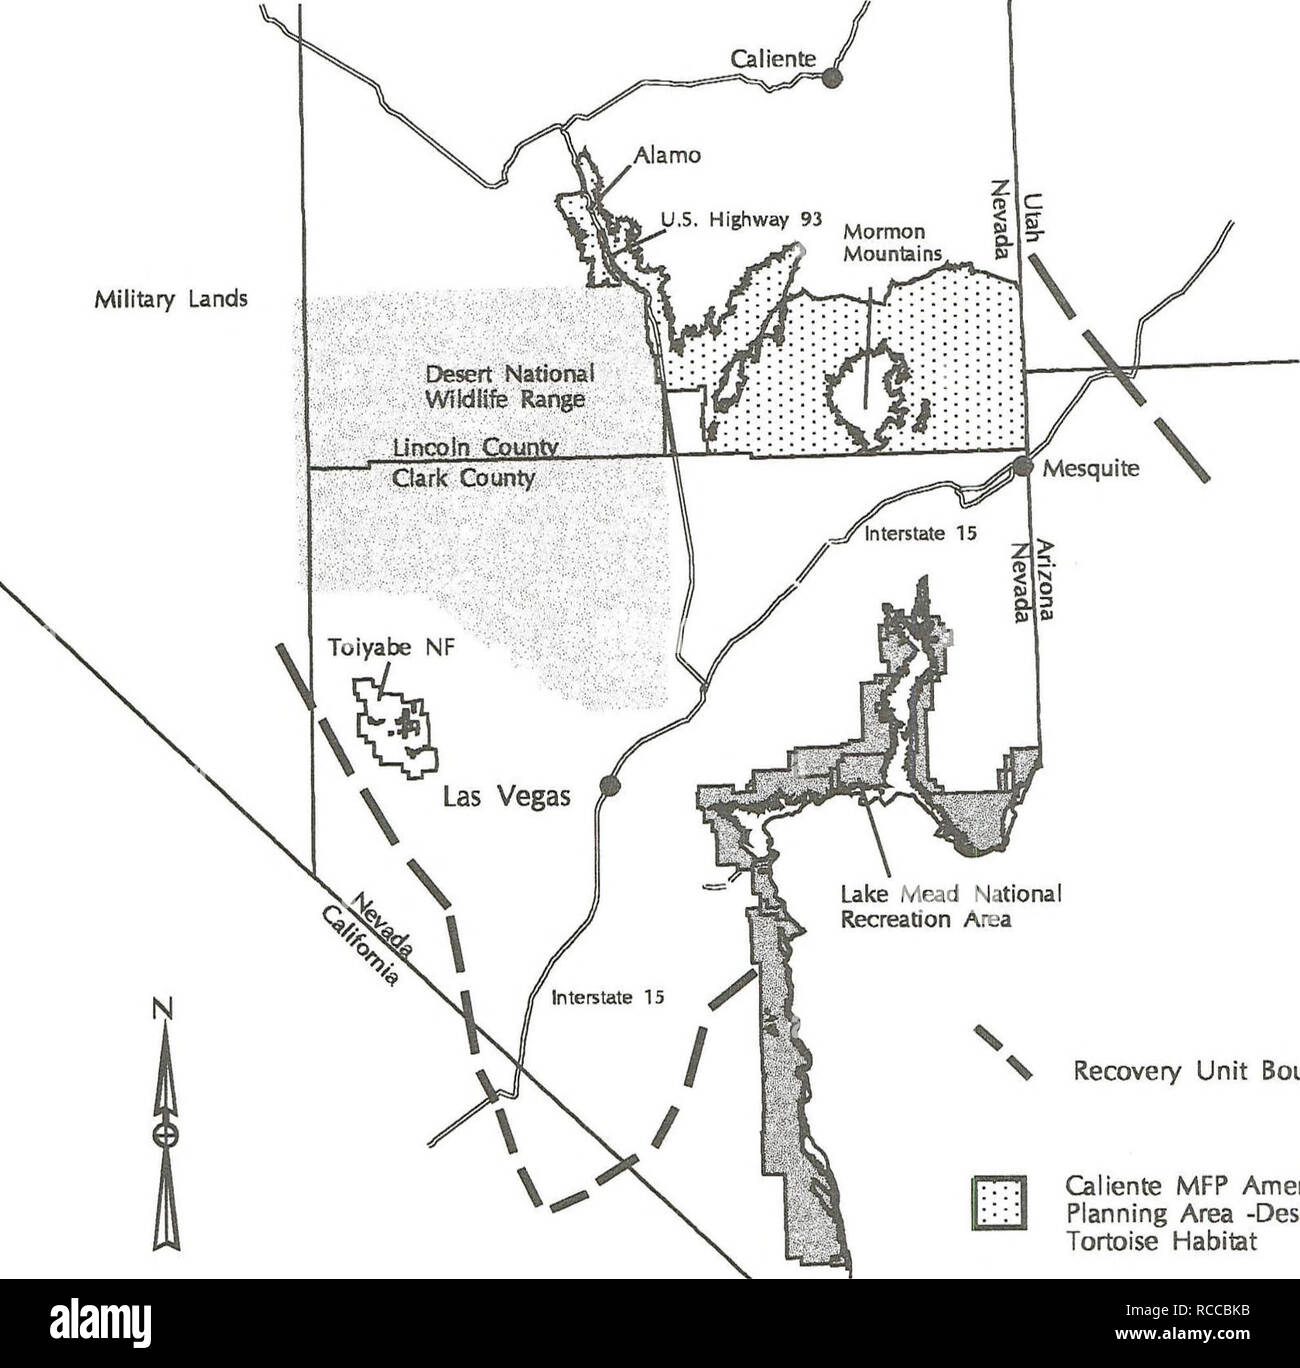 . Proyecto de modificación del Plan Marco de Gestión caliente y la declaración de impacto ambiental para la gestión del hábitat de la tortuga del desierto. Tortuga del desierto; especies amenazadas; la mejora del hábitat de la vida silvestre; uso de la tierra; las tierras públicas. Mapa 1-1 Noreste de Mojave en la unidad de recuperación. Unidad de recuperación frontera caliente MFP Enmienda Área de Planificación -hábitat de tortuga del desierto 50 50 Millas Preparado por: BLM, Ely, Nevada, utilizando ArcyinfoGIS 1-2. Por favor tenga en cuenta que estas imágenes son extraídas de la página escaneada imágenes que podrían haber sido mejoradas digitalmente para mejorar la legibilidad, la coloración y el aspecto de estas ilustraciones pueden no Foto de stock